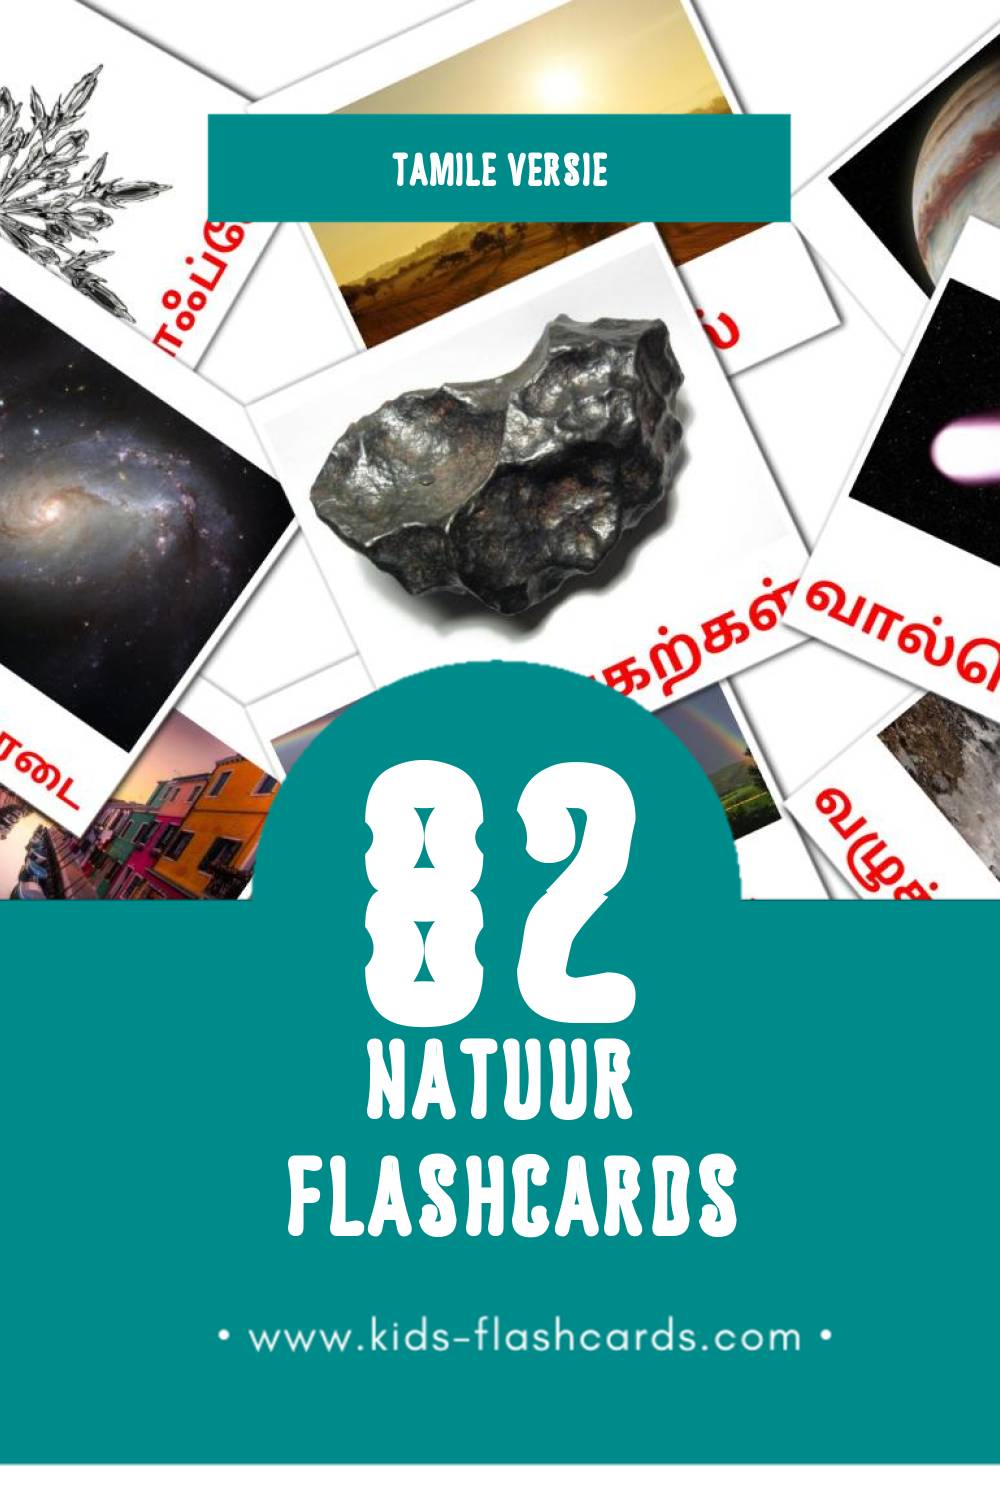 Visuele இயற்கை Flashcards voor Kleuters (82 kaarten in het Tamil)